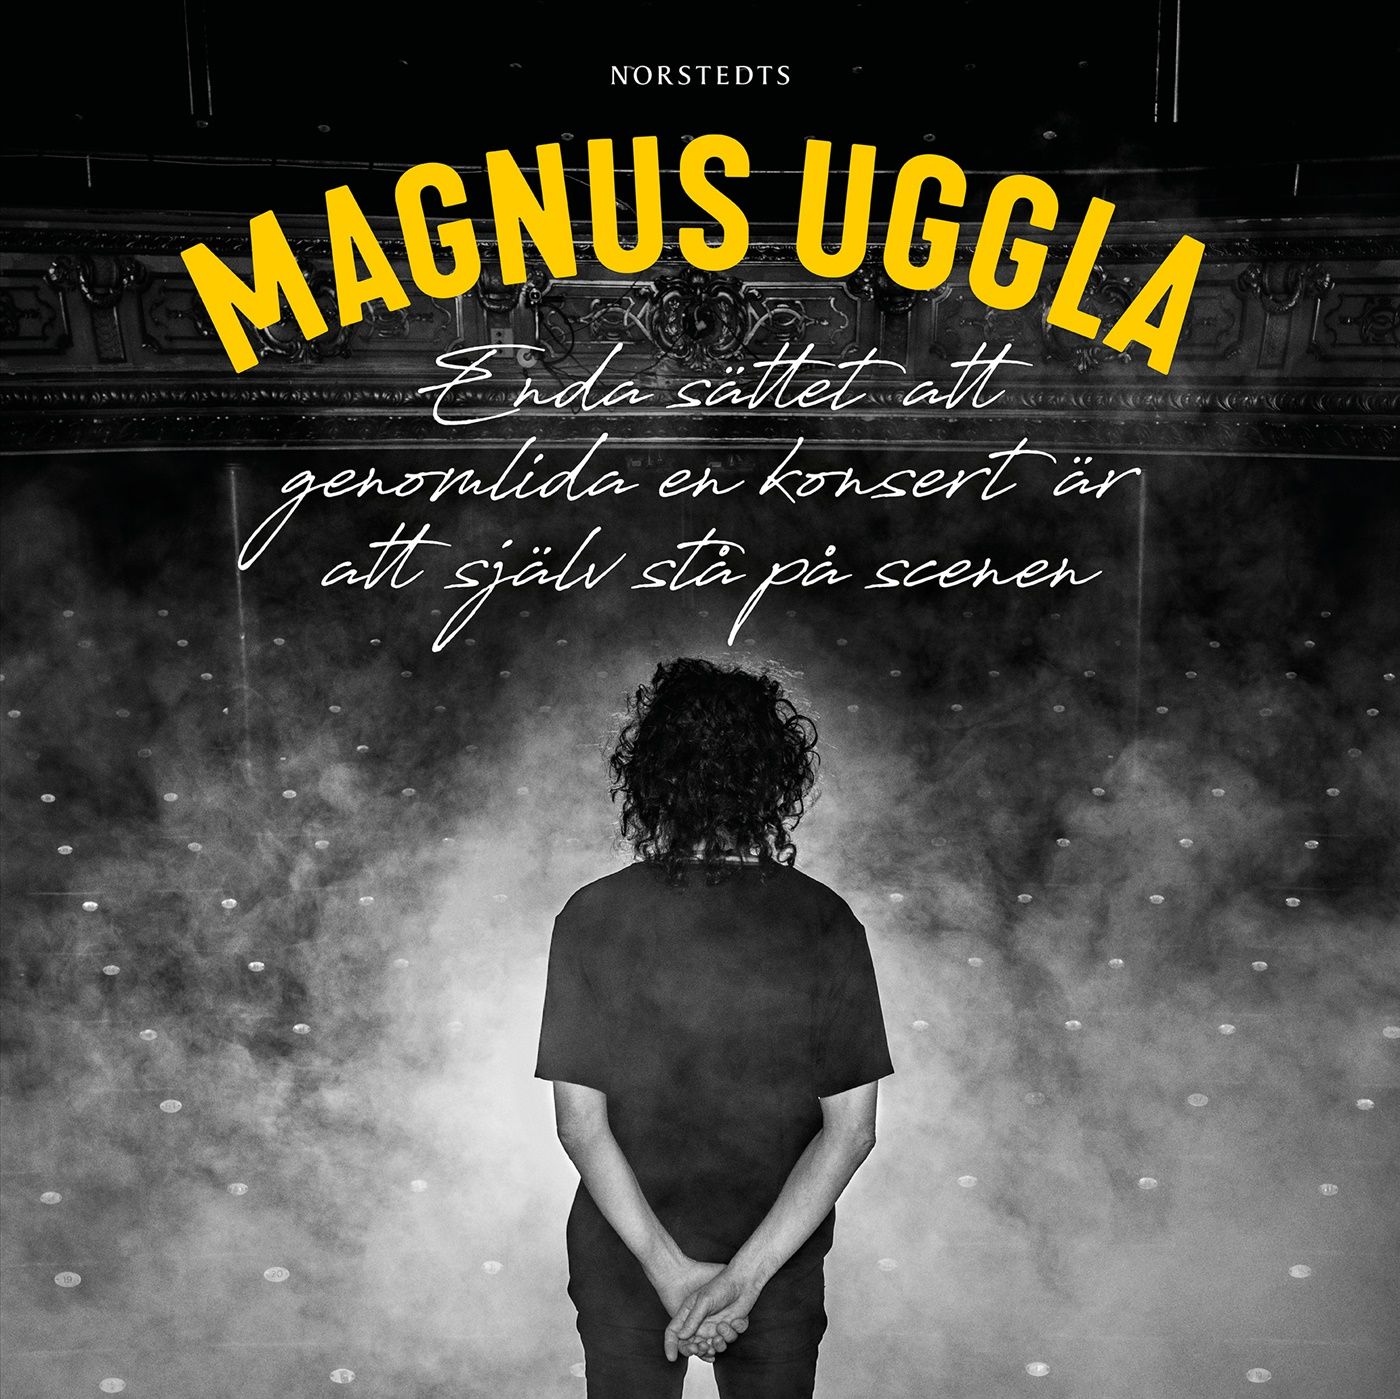 Enda sättet att genomlida en konsert är att själv stå på scenen, lydbog af Magnus Uggla